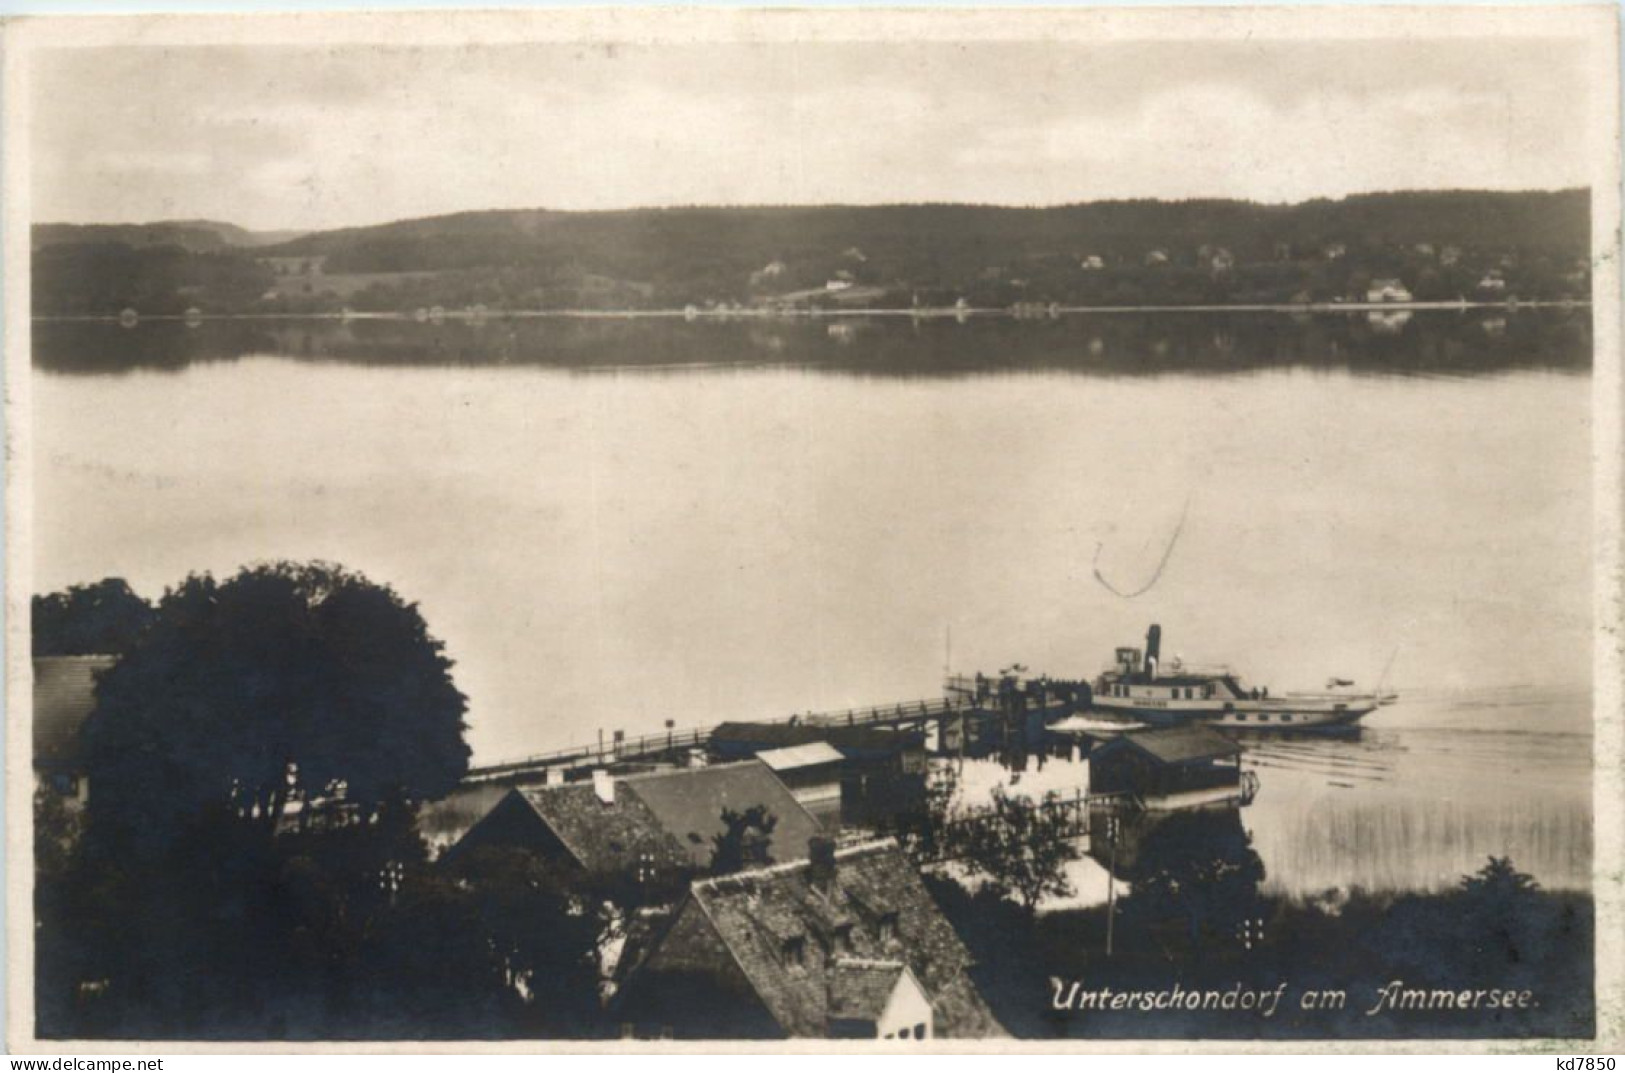 Am Ammersee, Unter-Schondorf, Strandbad Forster - Landsberg